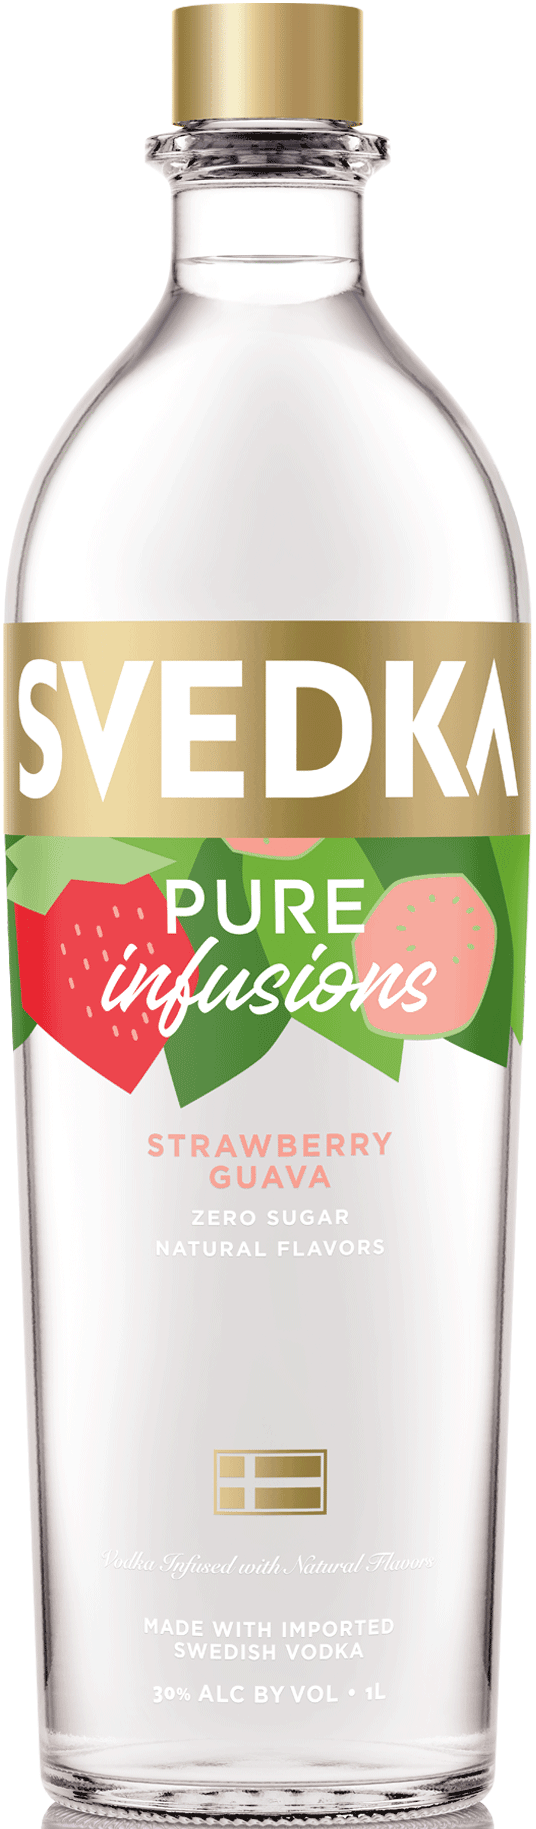 Svedka Strawberry Guava Vodka